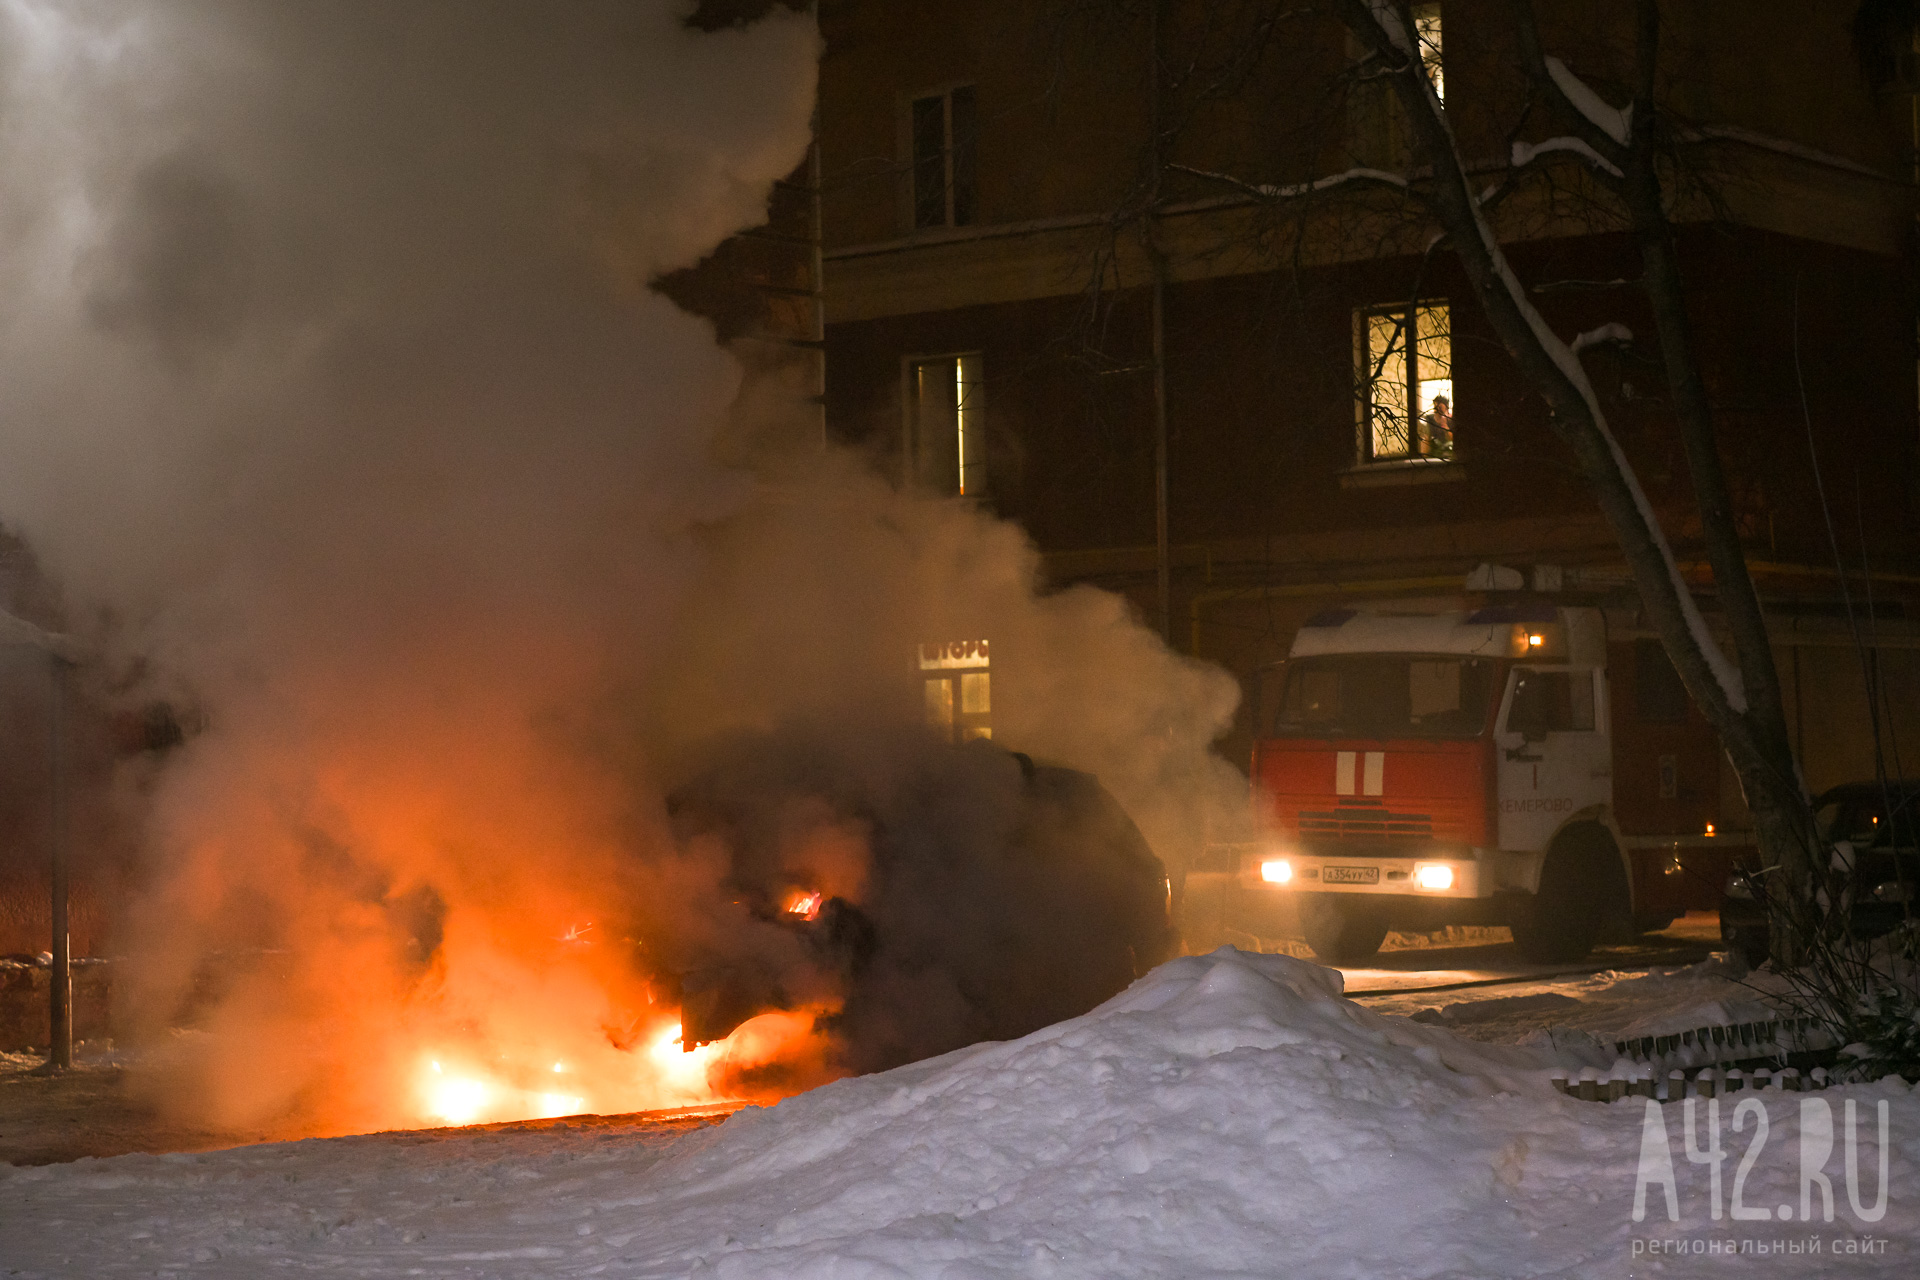 МЧС: авто Mercedes-Benz, Audi и Chery загорелись ночью в Новокузнецке